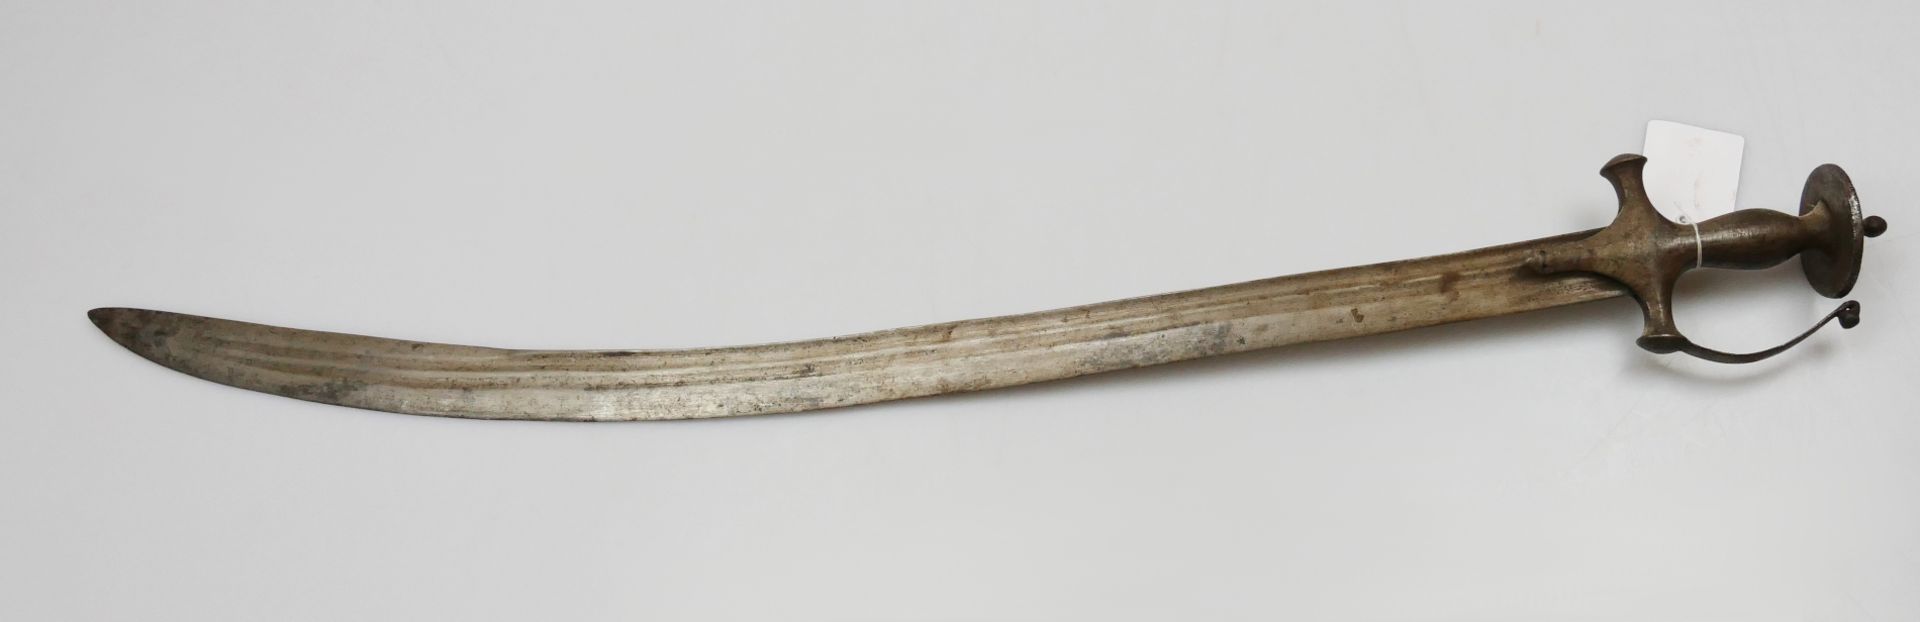 1 Talwar wohl Indien Metallklinge und -griff, ca. L 91cm, z.T. besch., Asp.